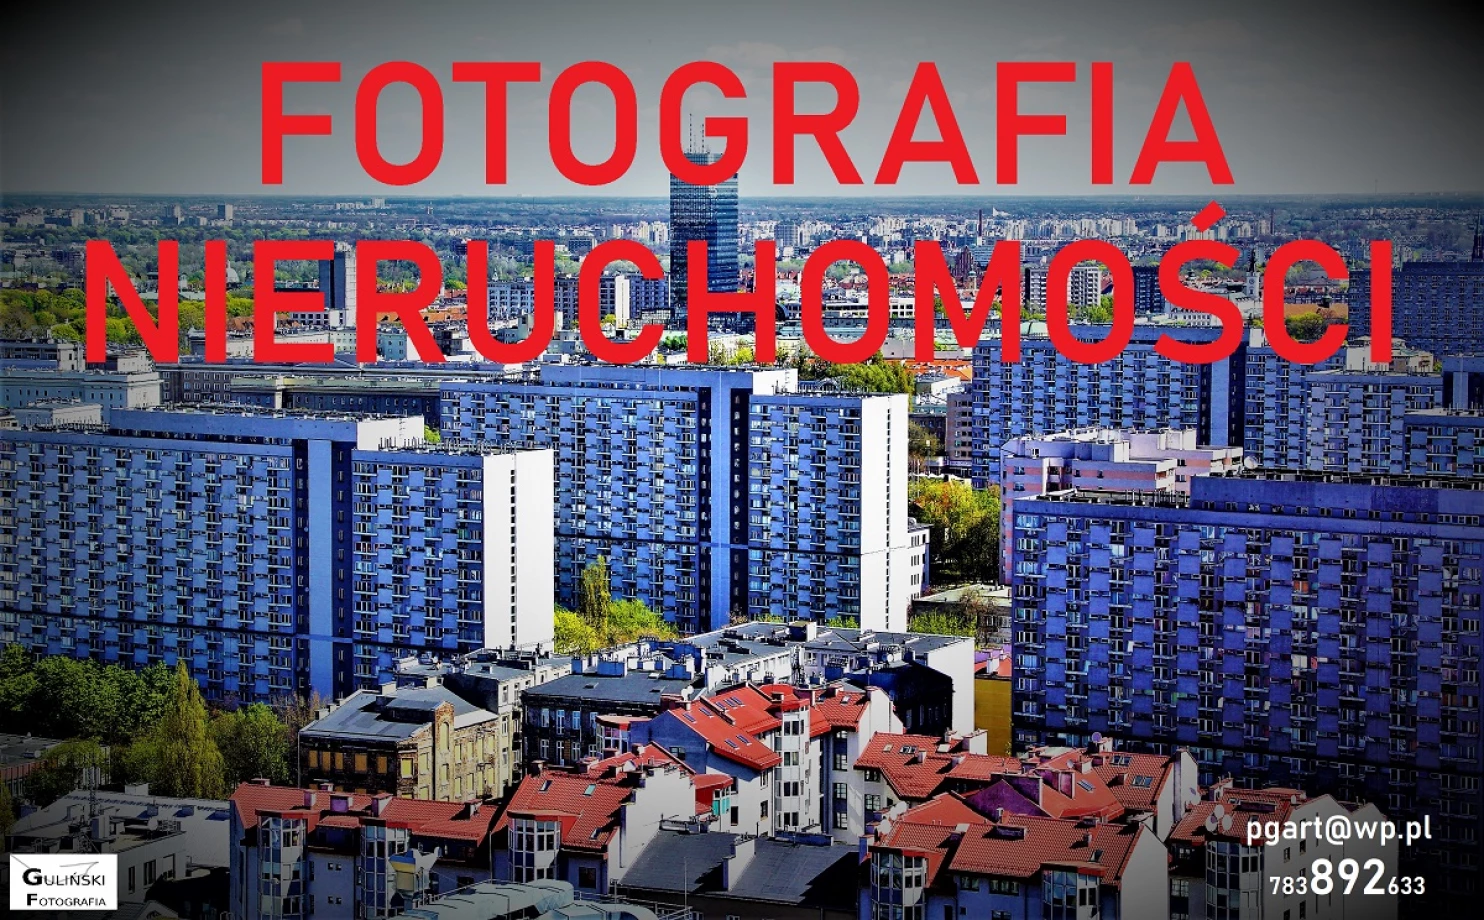 zdjęcia katowice fotograf pg-art-piotr-gulinski portfolio zdjecia architektury budynkow